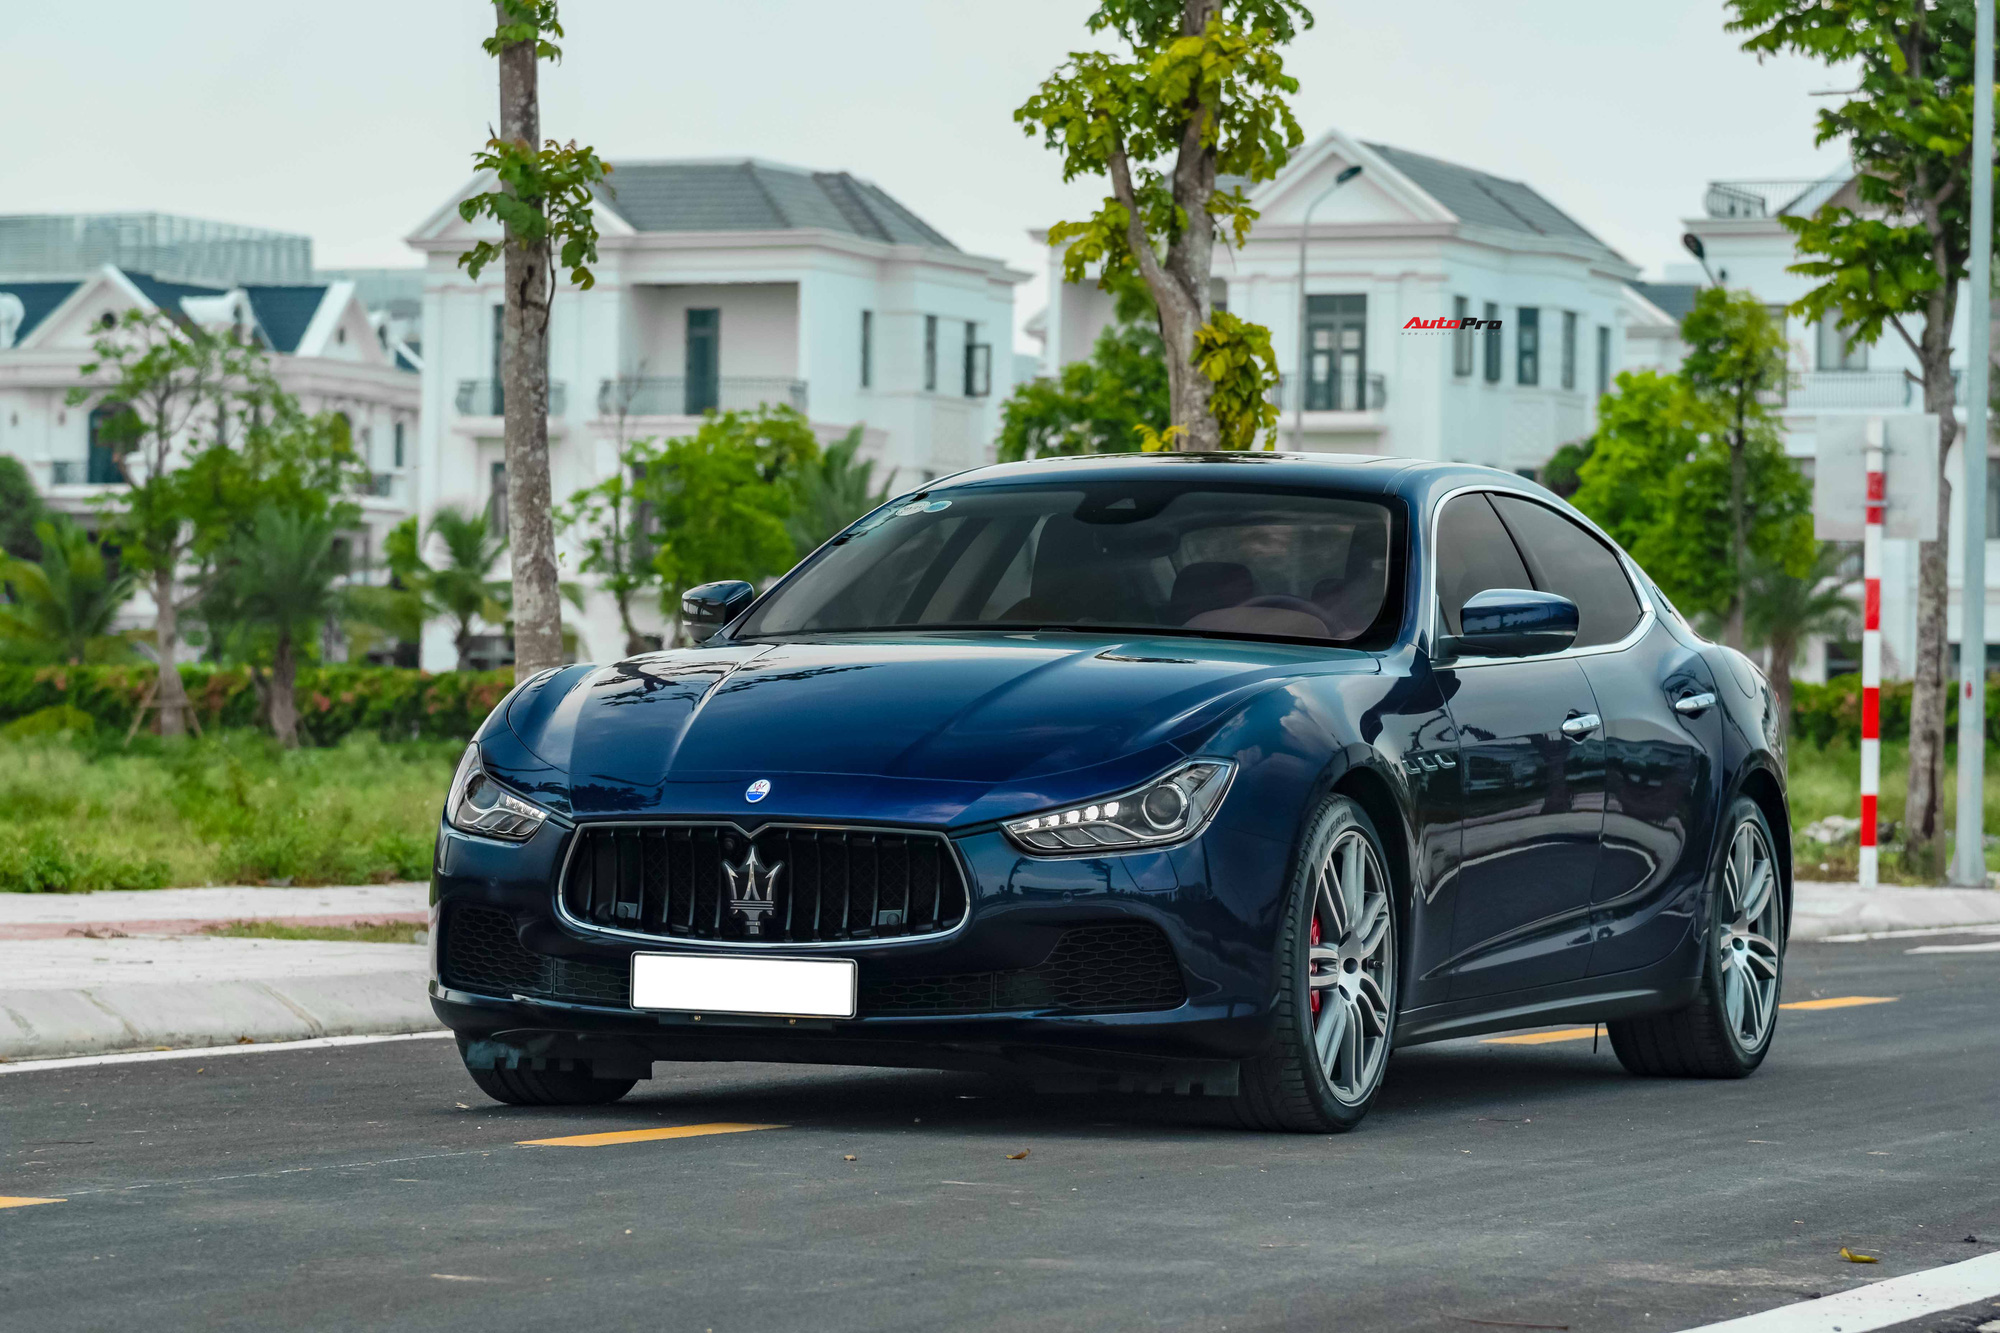 Mới chạy gần 20.000 km, chủ nhân Maserati Ghibli bán lại rẻ hơn xe mới gần 2 tỷ đồng